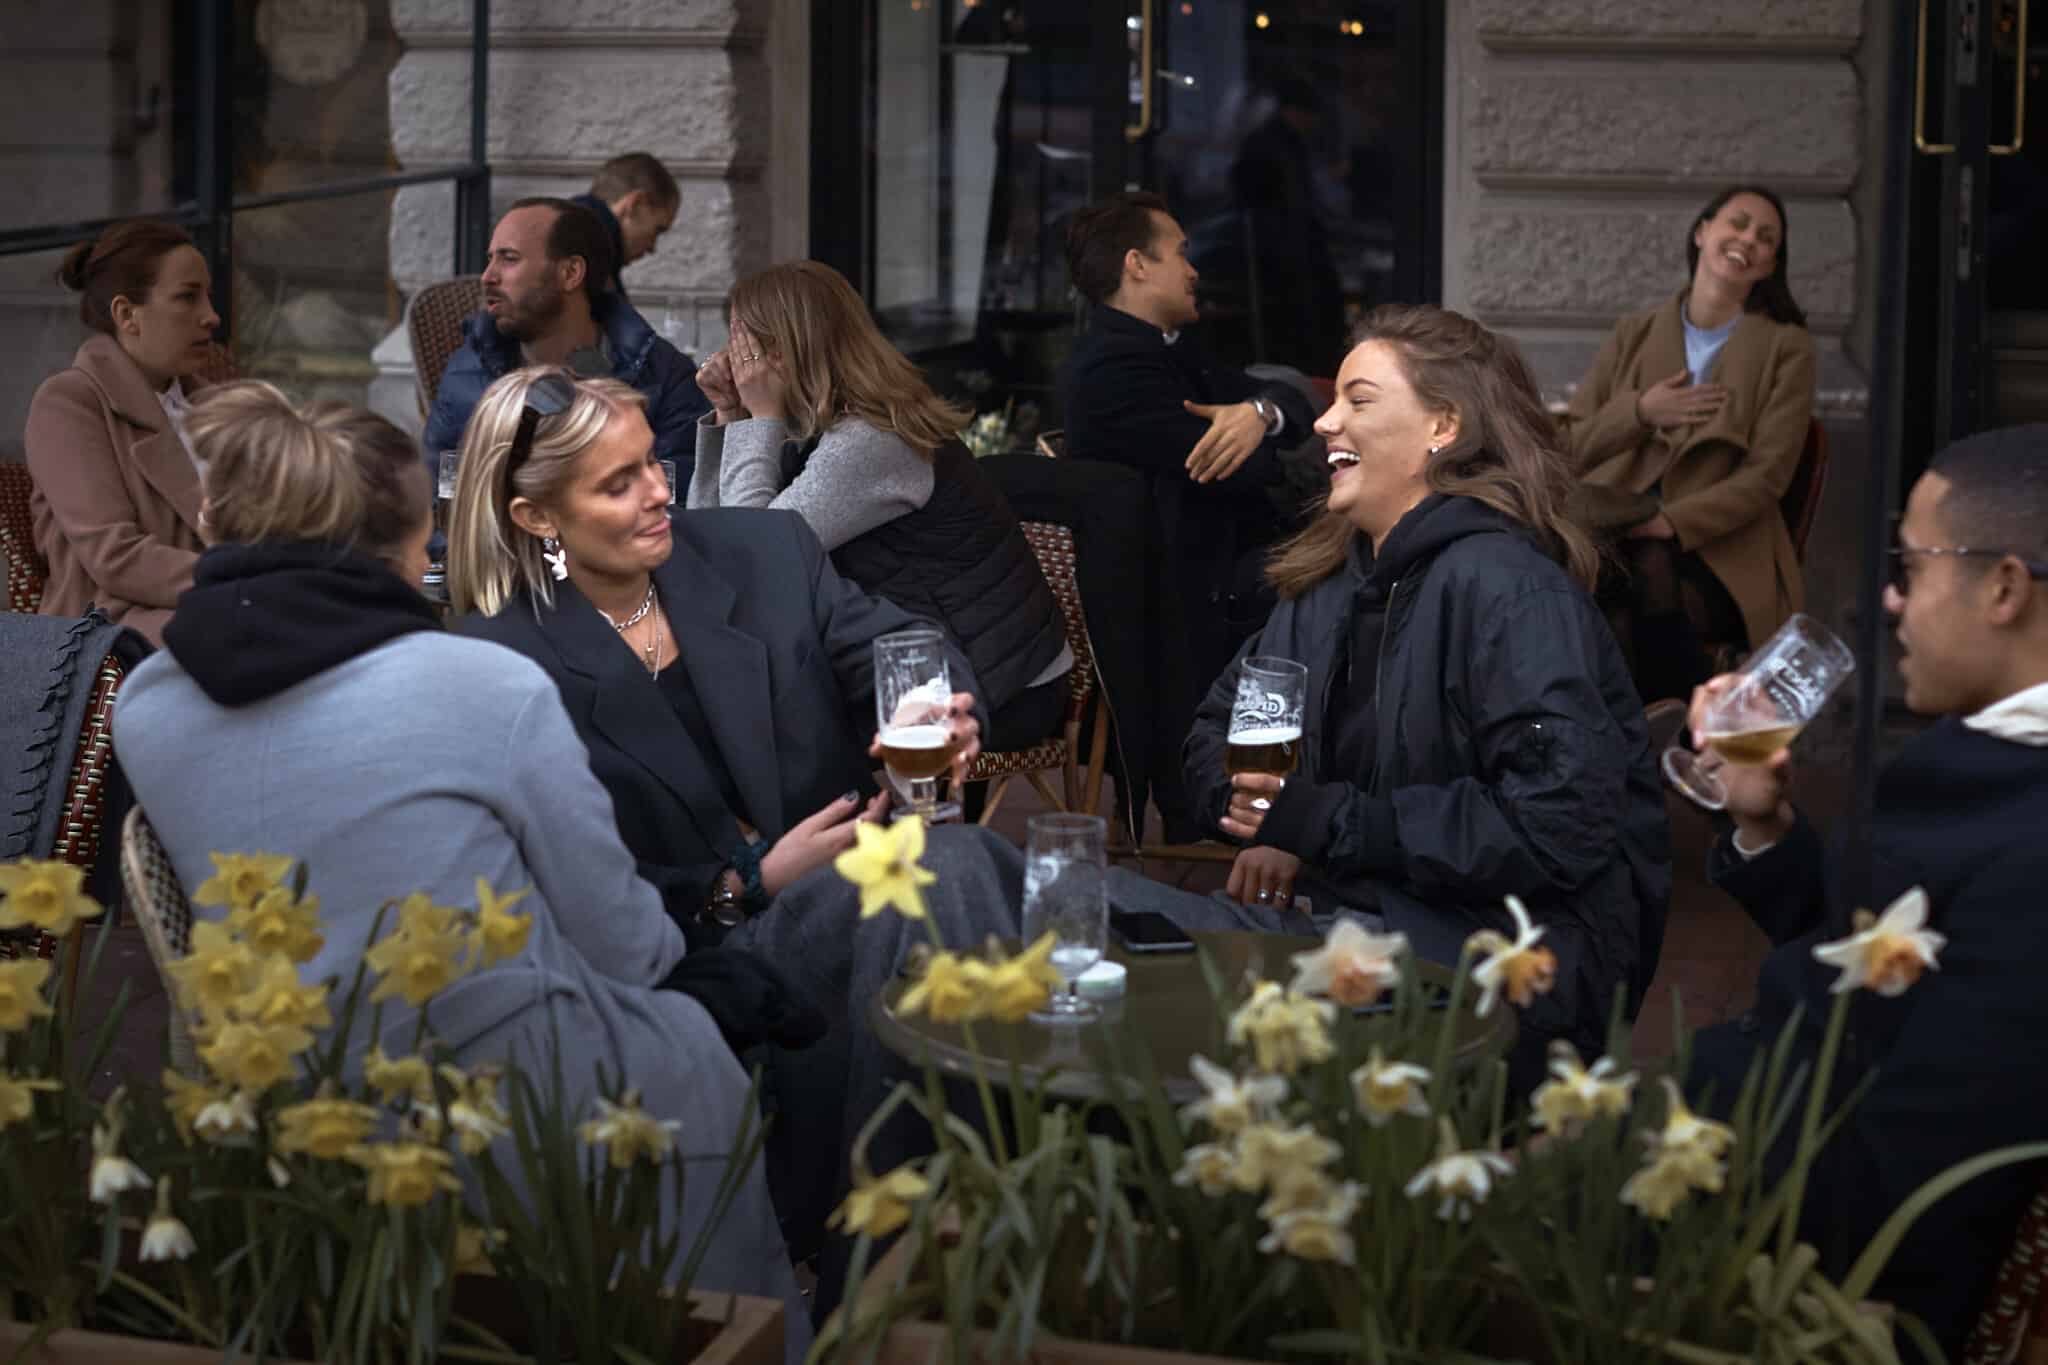 שוודים בבית קפה בזמן מגפת הקורונה, ב-8 באפריל 2020 (צילום: AP Photo/Andres Kudacki)